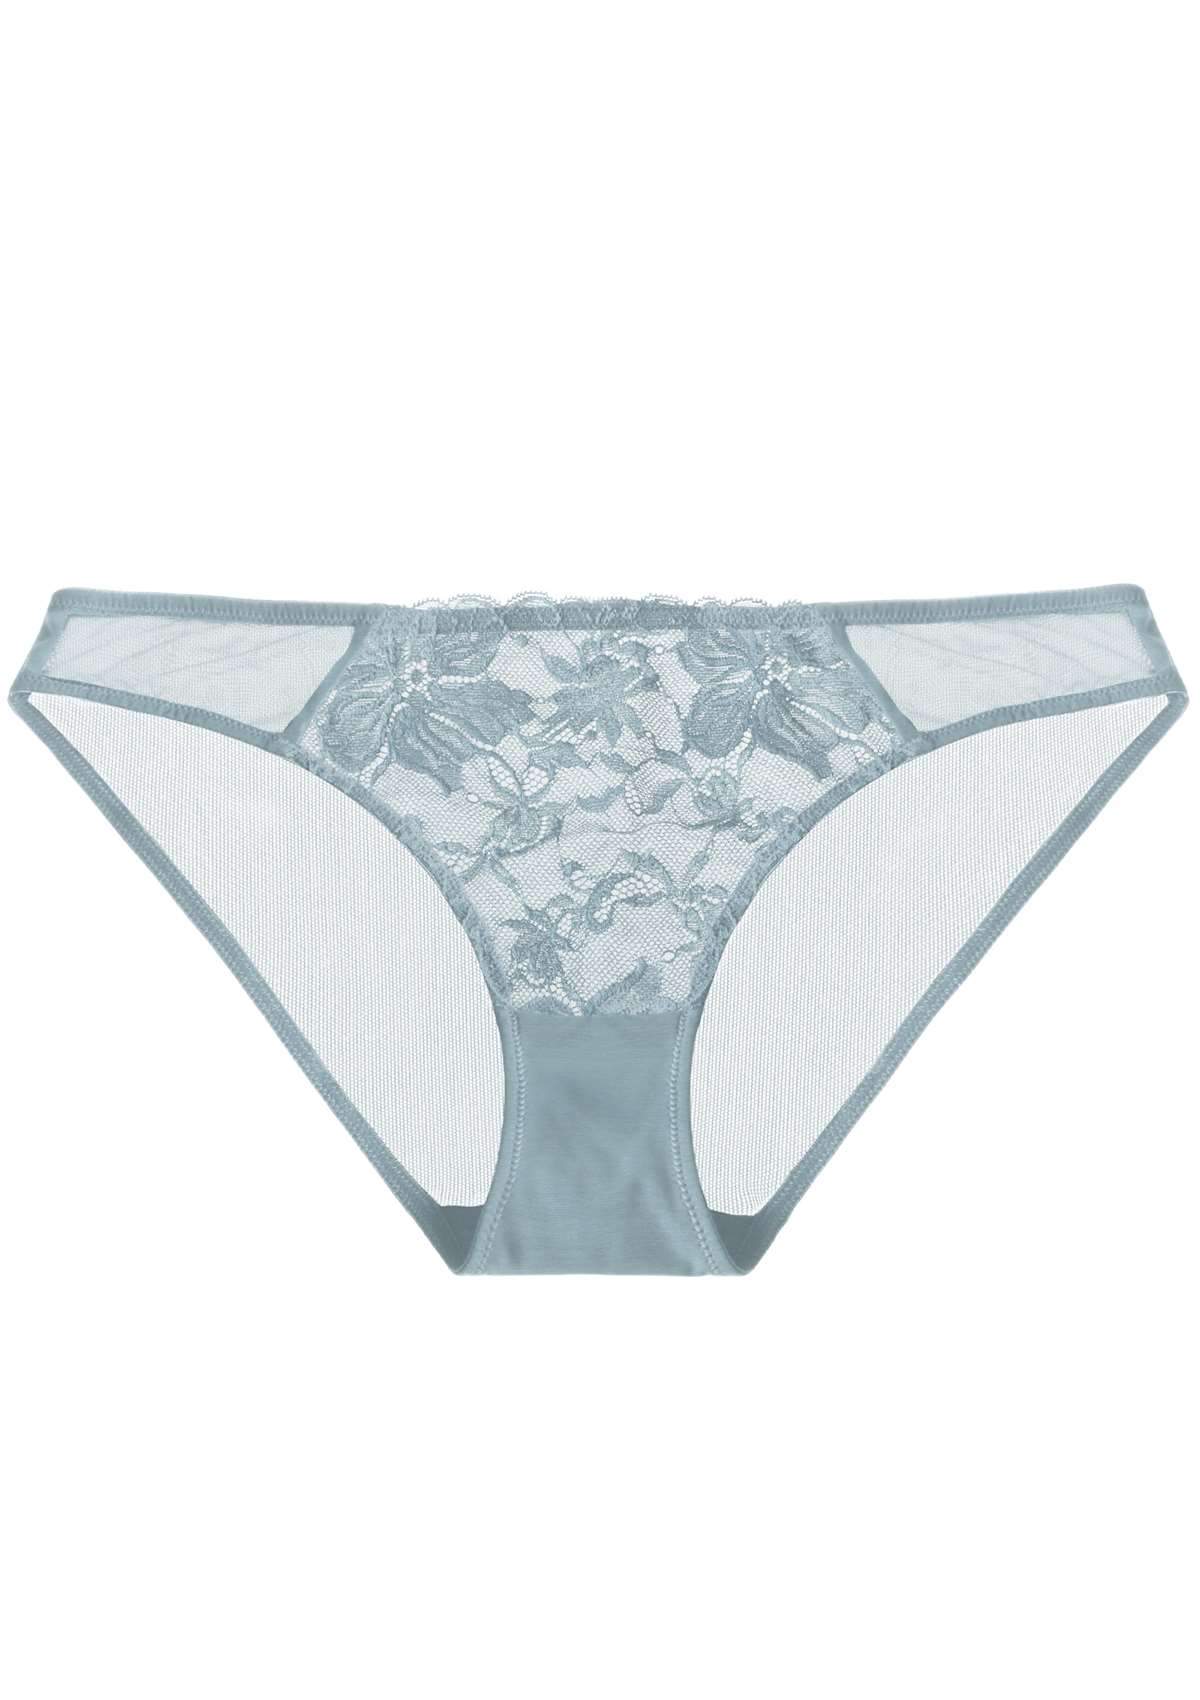 HSIA Breathable Sexy Feminine Lace Mesh Bikini Underwear - L / Light Coral